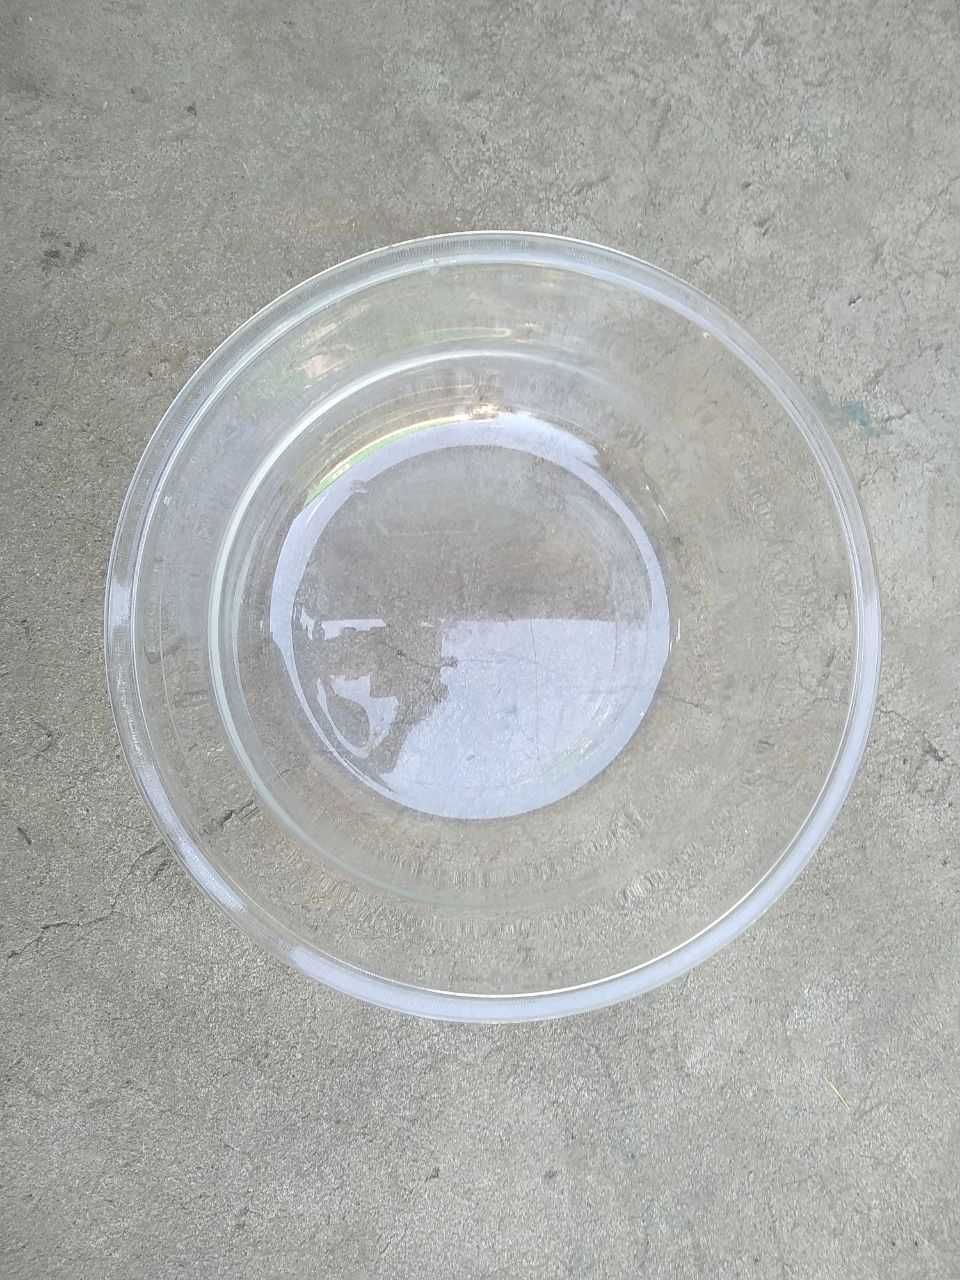 Посуда для микроволновки,или для салата(изготовлена из калёного стекла